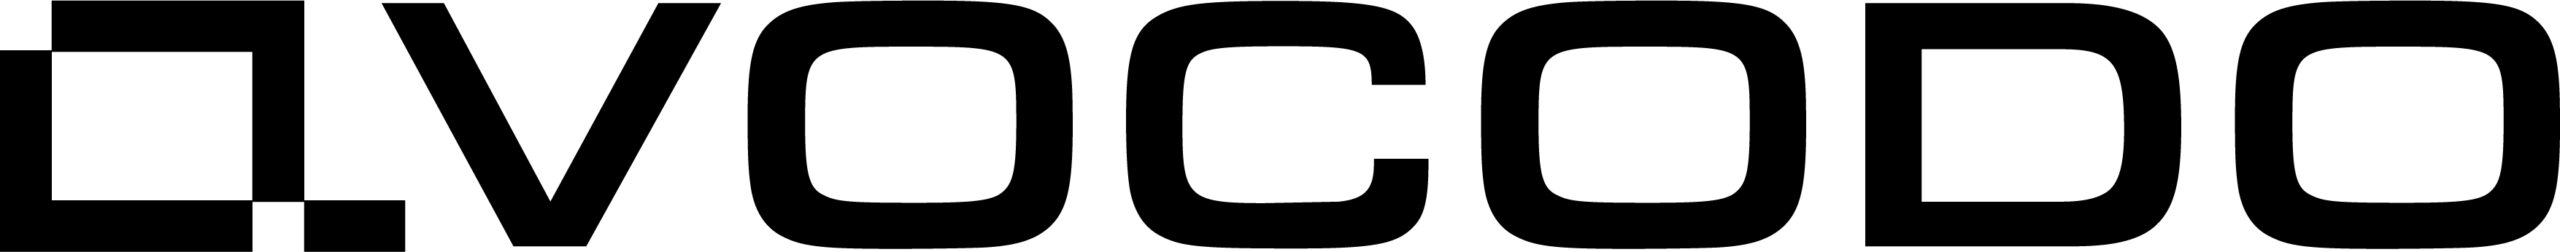 Avocodo GmbH_logo